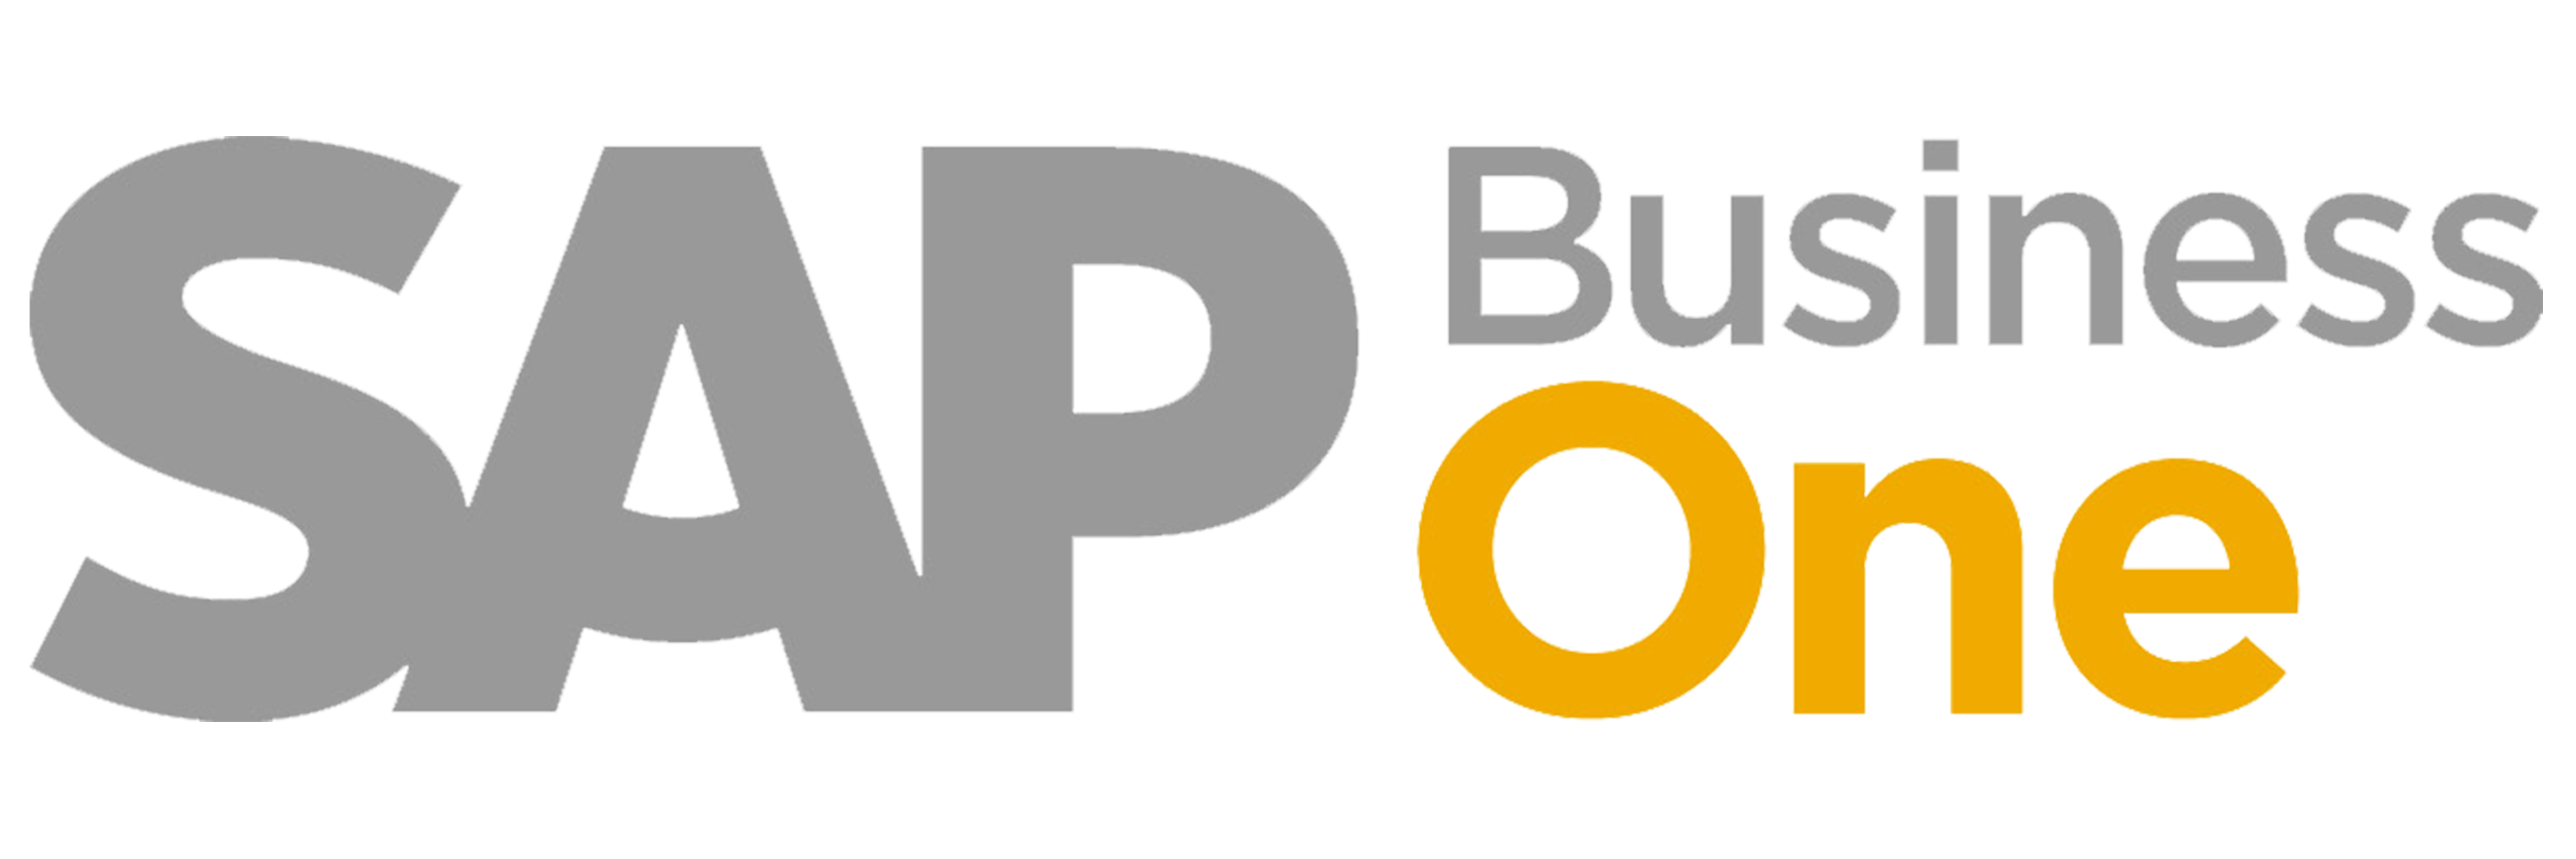 sap-business-one-logo